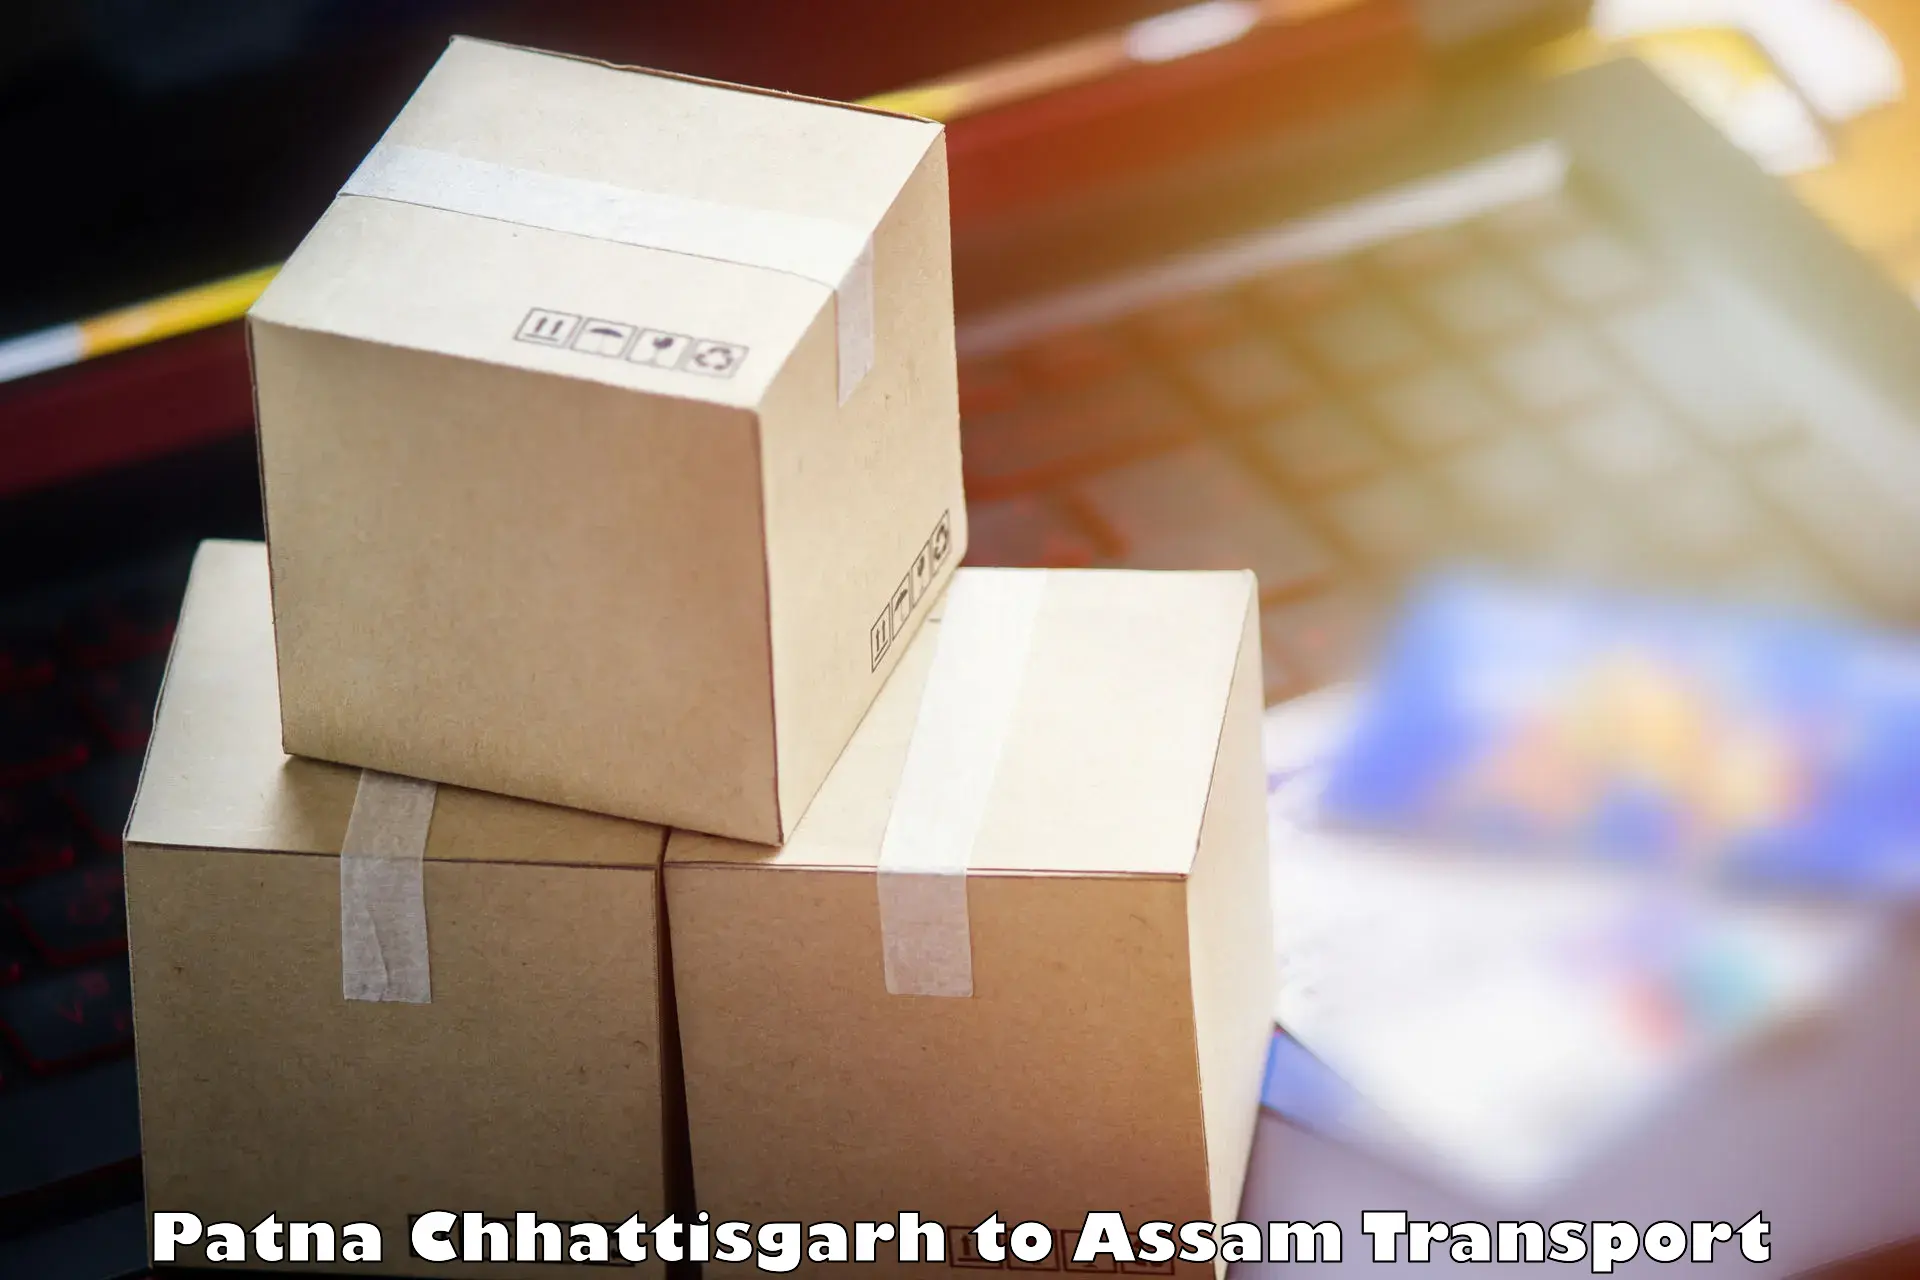 Delivery service Patna Chhattisgarh to Thelamara